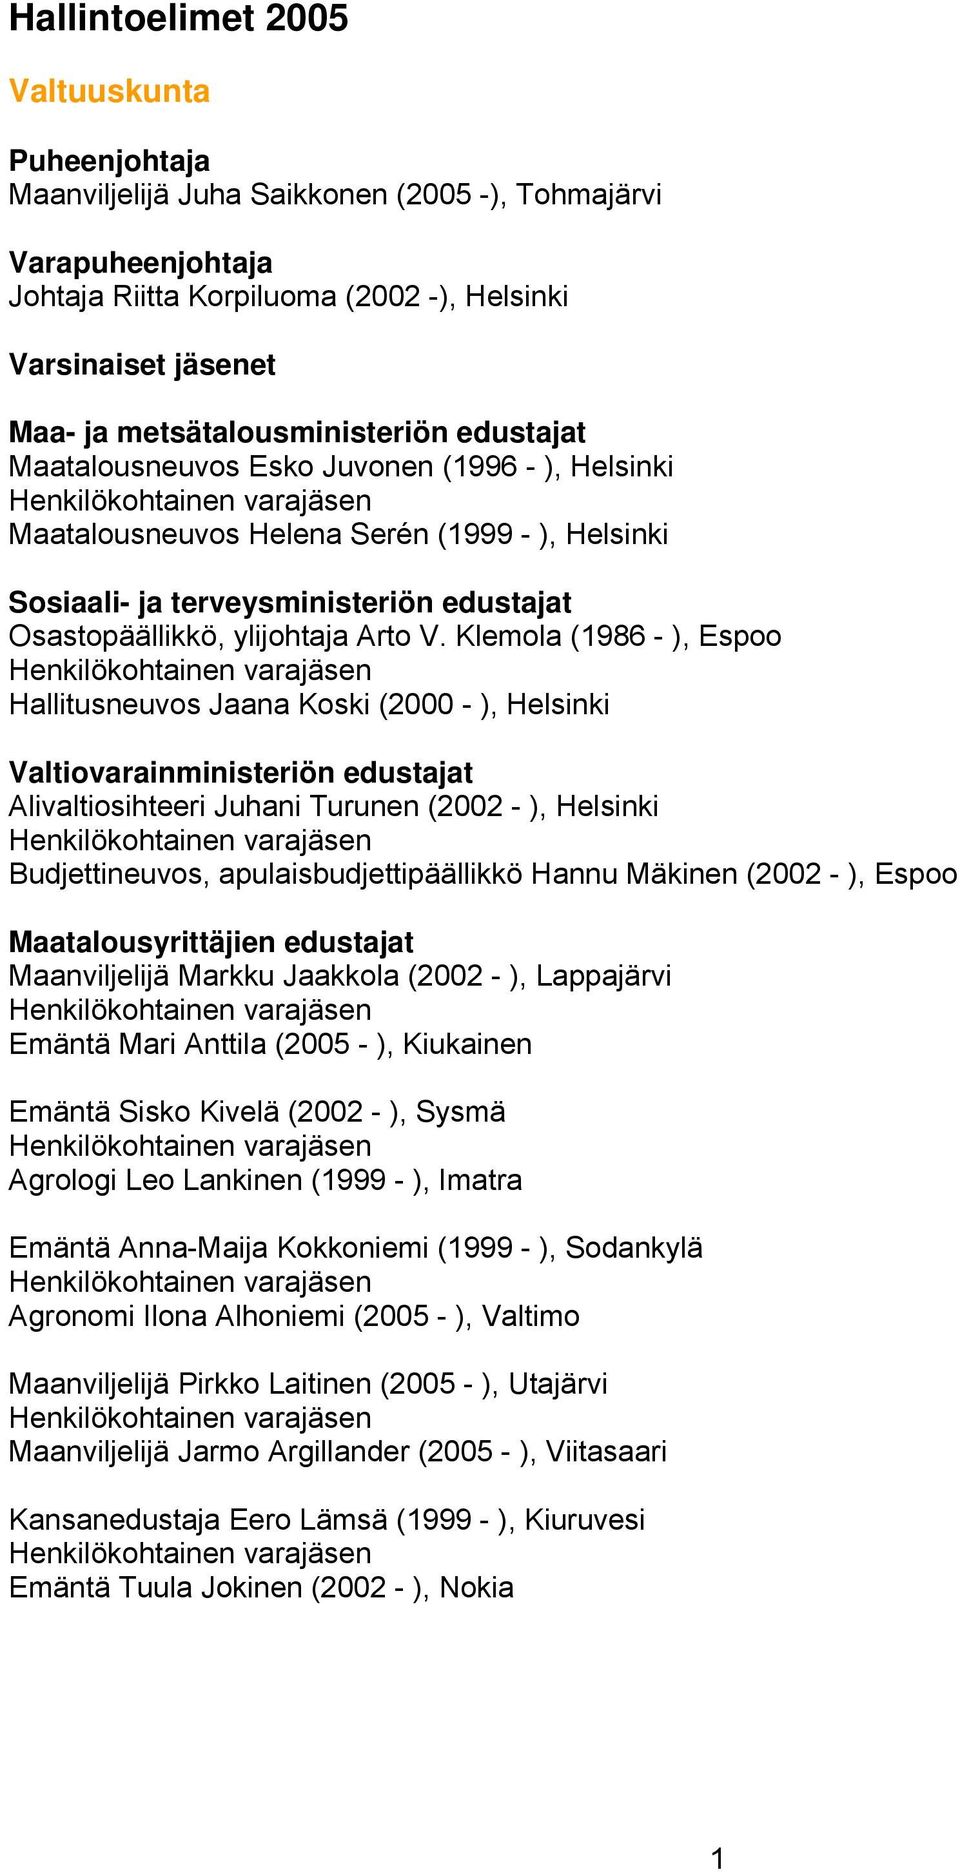 Klemola (1986 - ), Espoo Hallitusneuvos Jaana Koski (2000 - ), Helsinki Valtiovarainministeriön edustajat Alivaltiosihteeri Juhani Turunen (2002 - ), Helsinki Budjettineuvos, apulaisbudjettipäällikkö